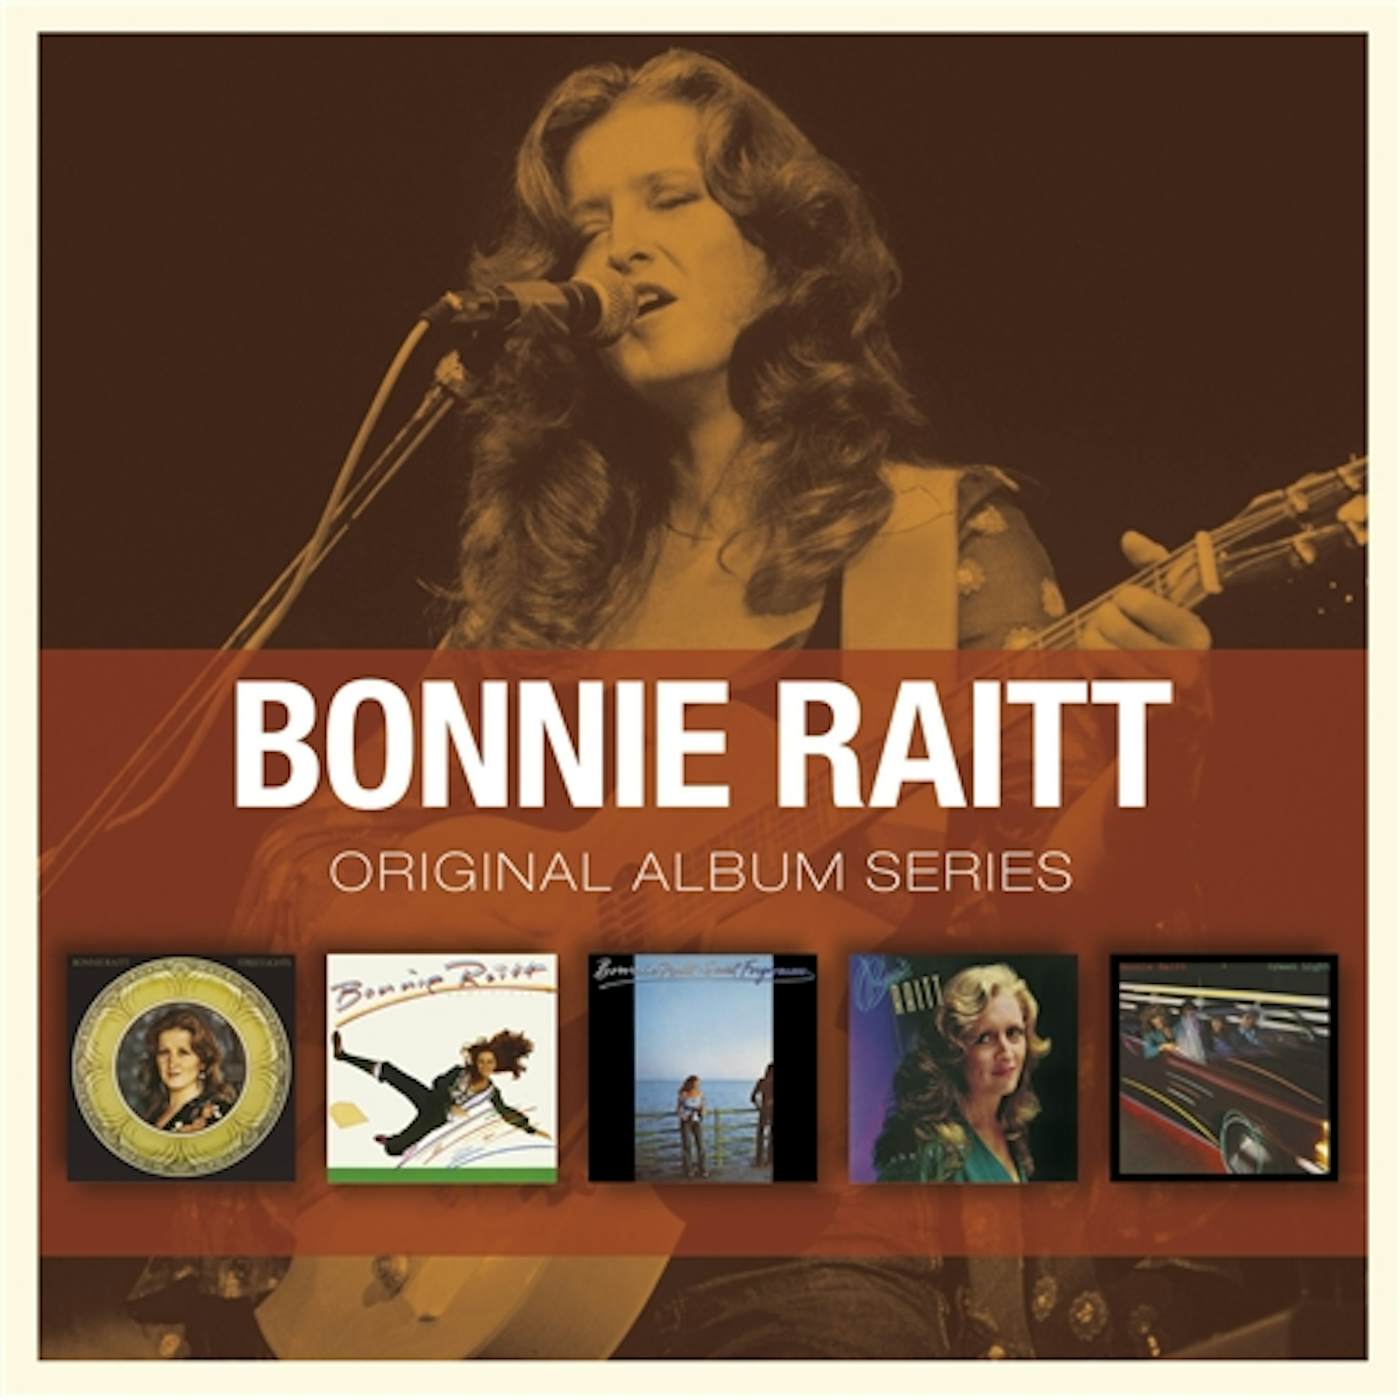 Bonnie Raitt ORIGINAL ALBUM SERIES CD